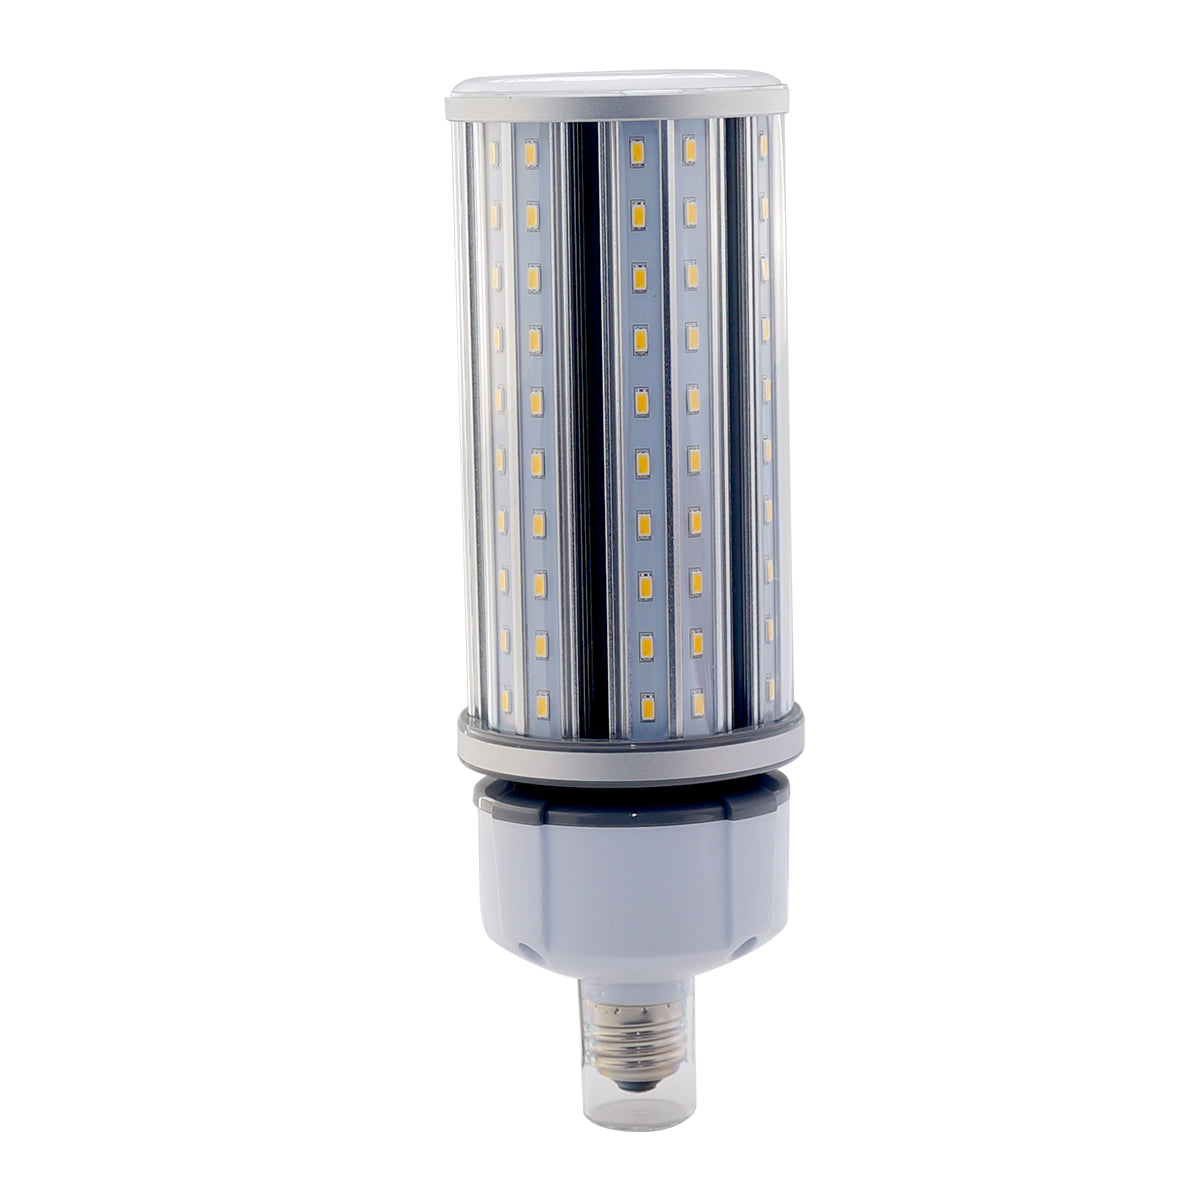 CNL+ LED Corn Lamp – 45 Watt